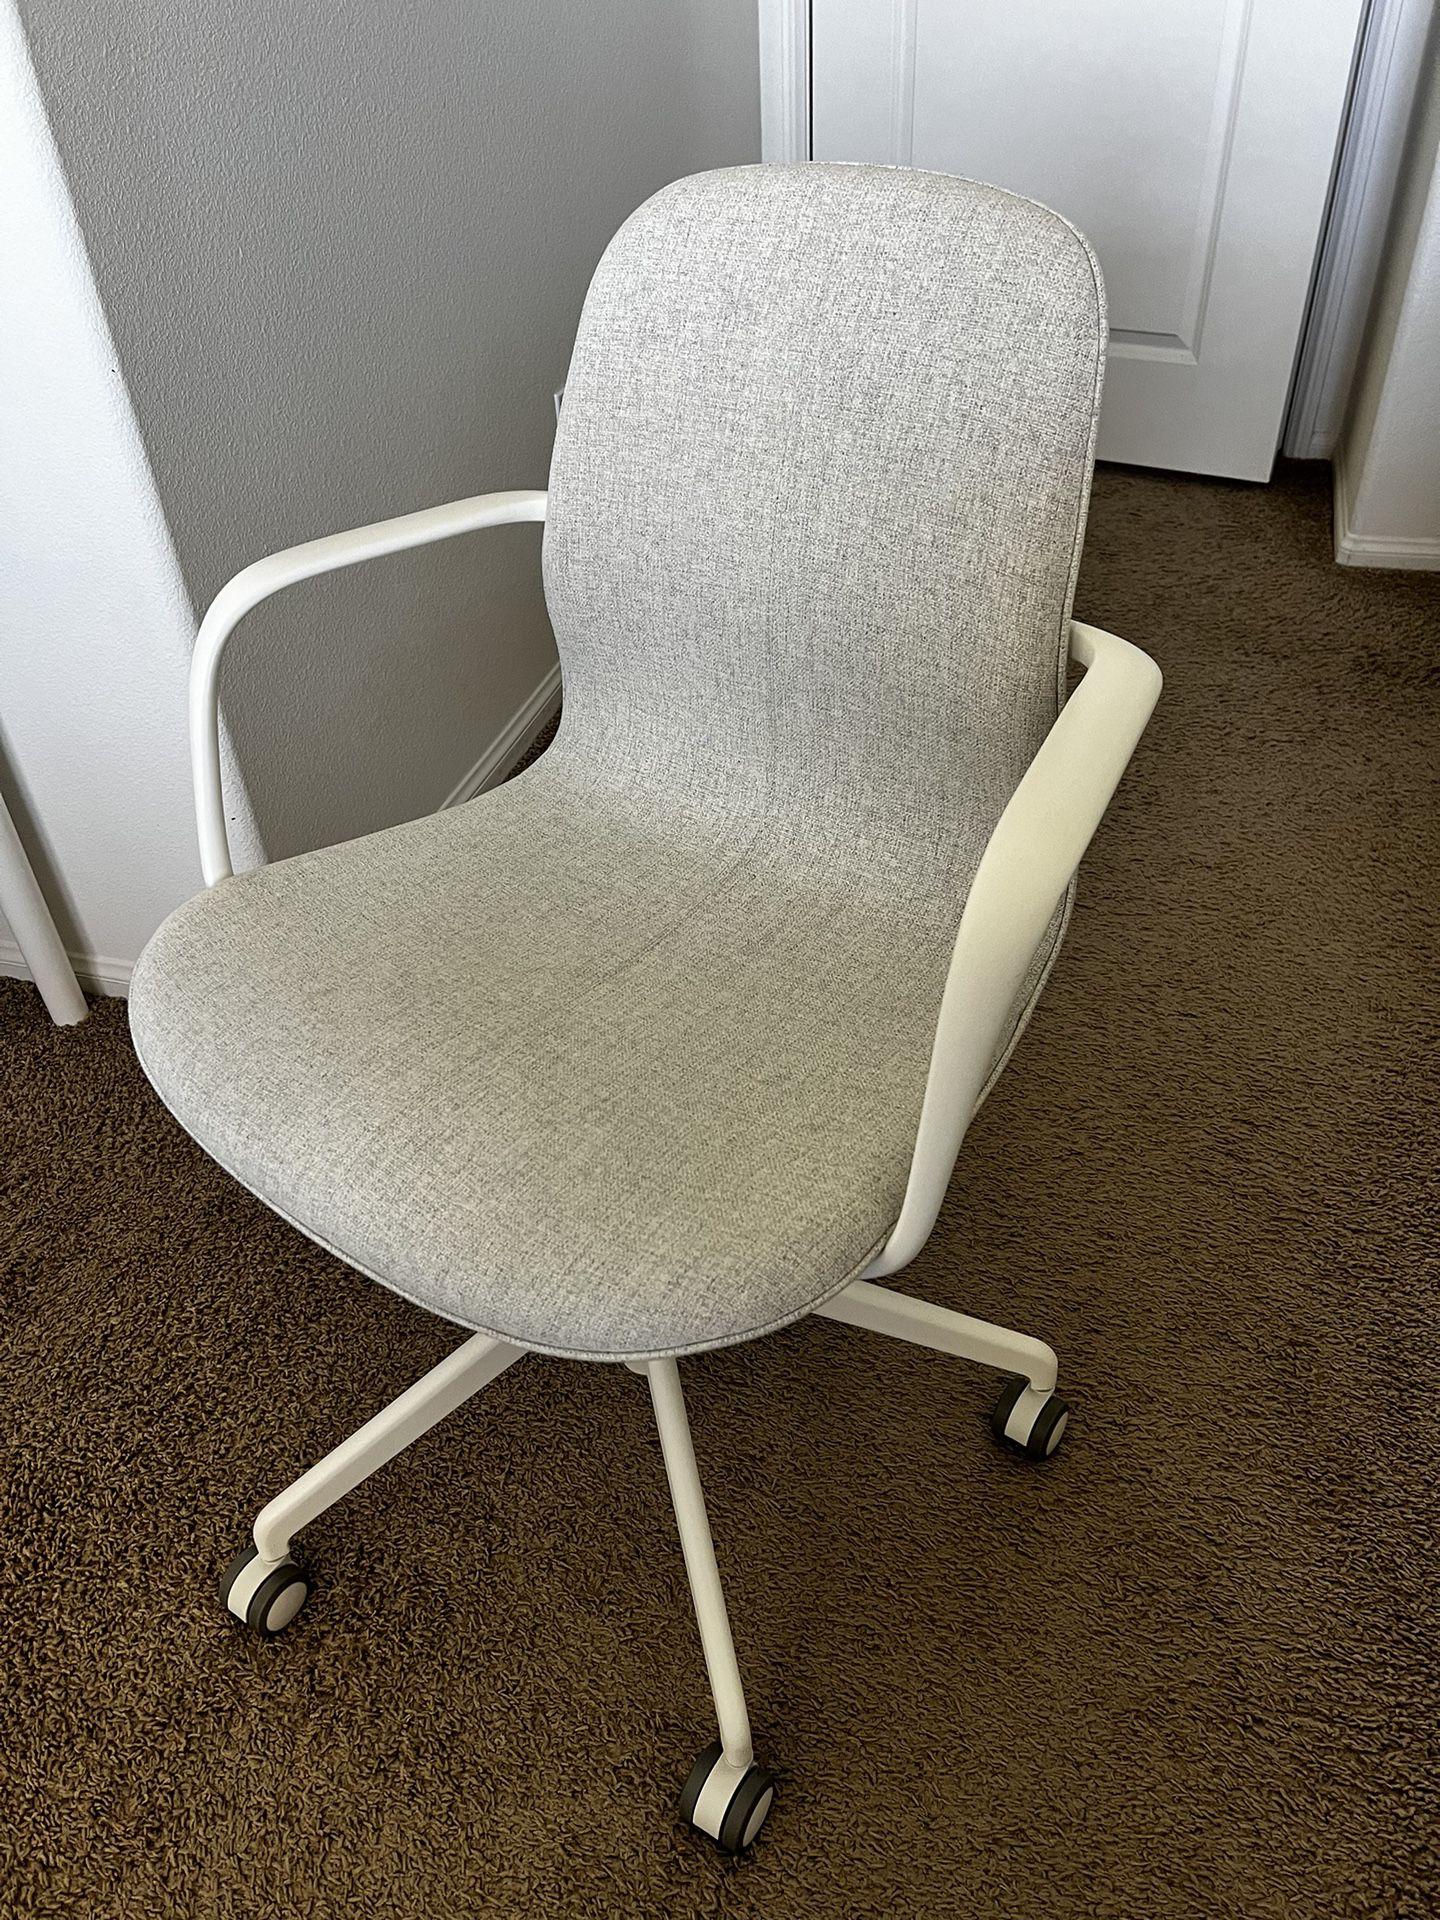 Ikea Office / Desk Chair